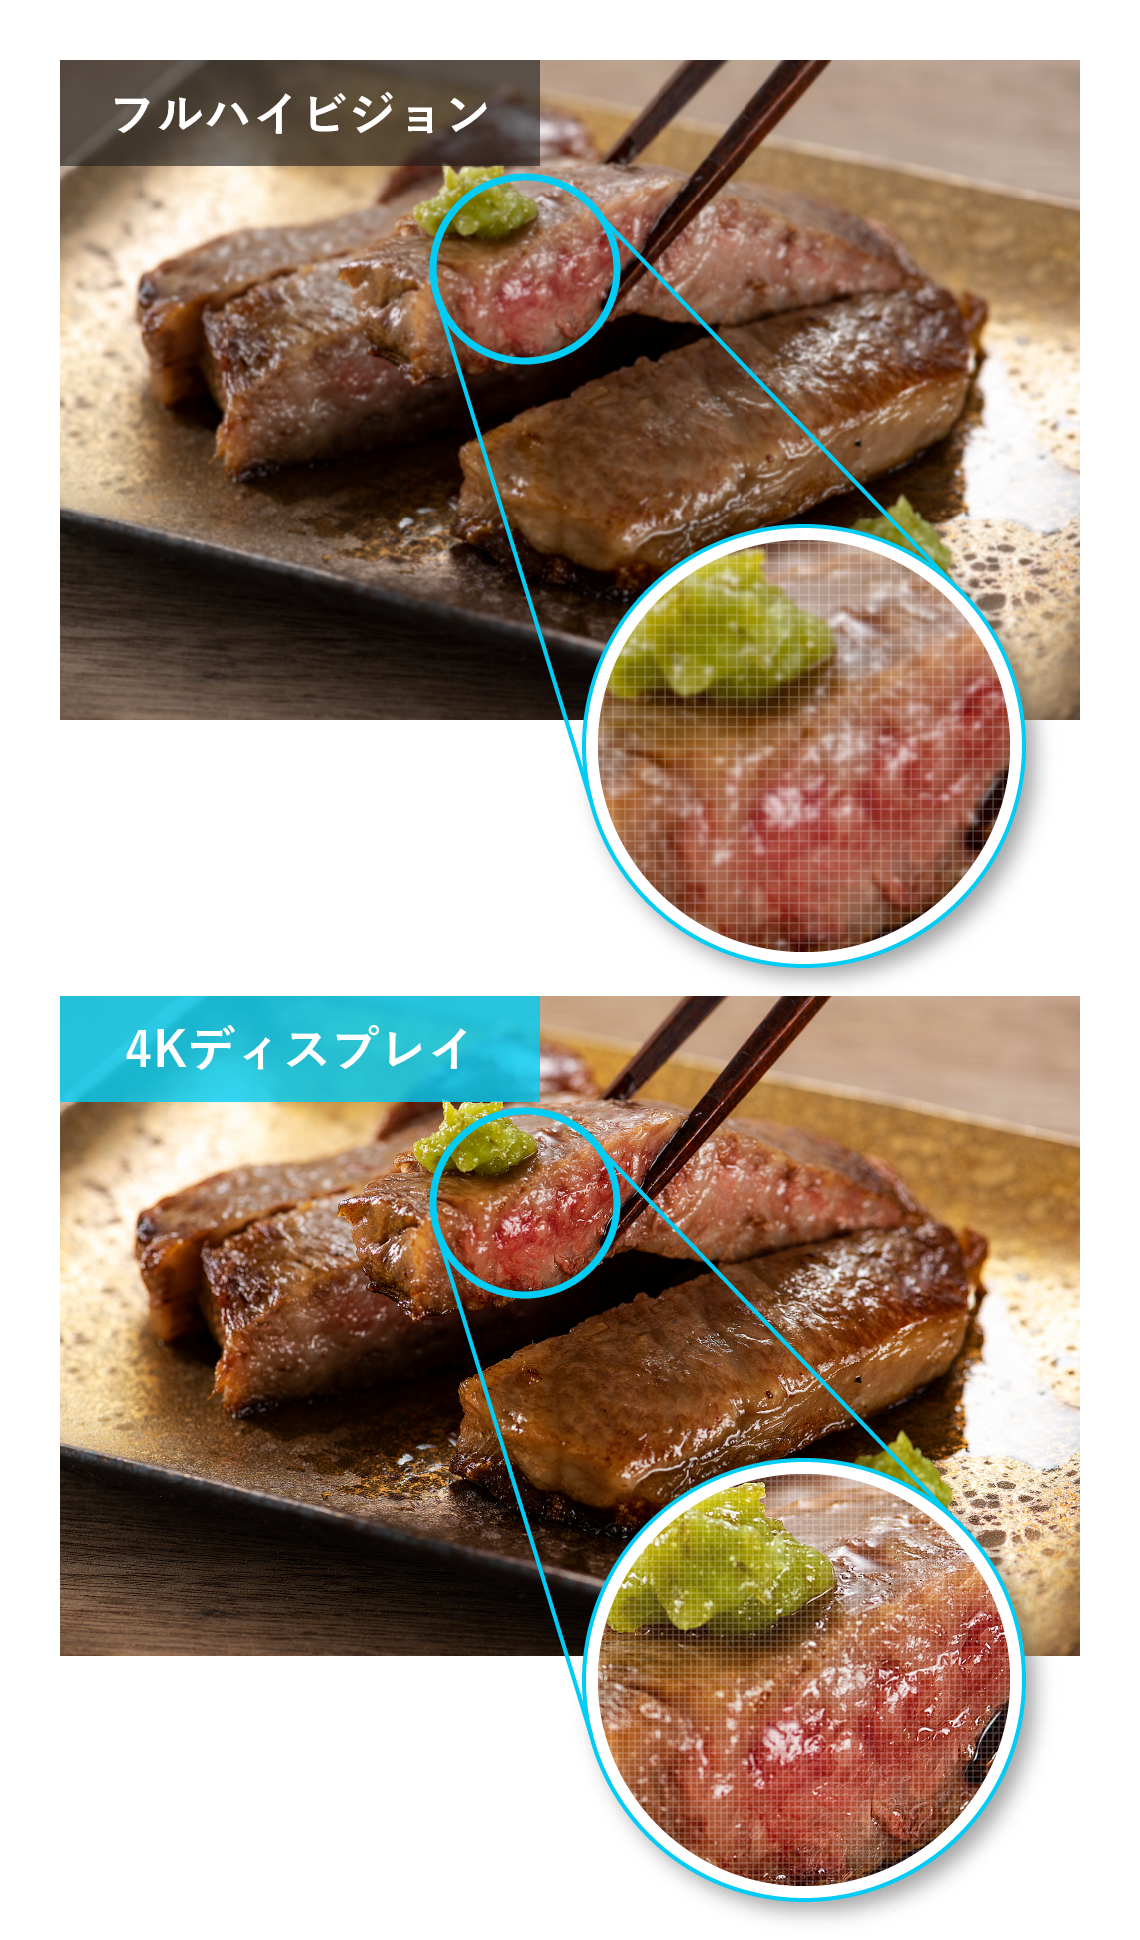 フルハイビジョンと4Kの飲食店チラシ映像、お肉の断面が4Kの方がきれいに見える画像比較イメージ